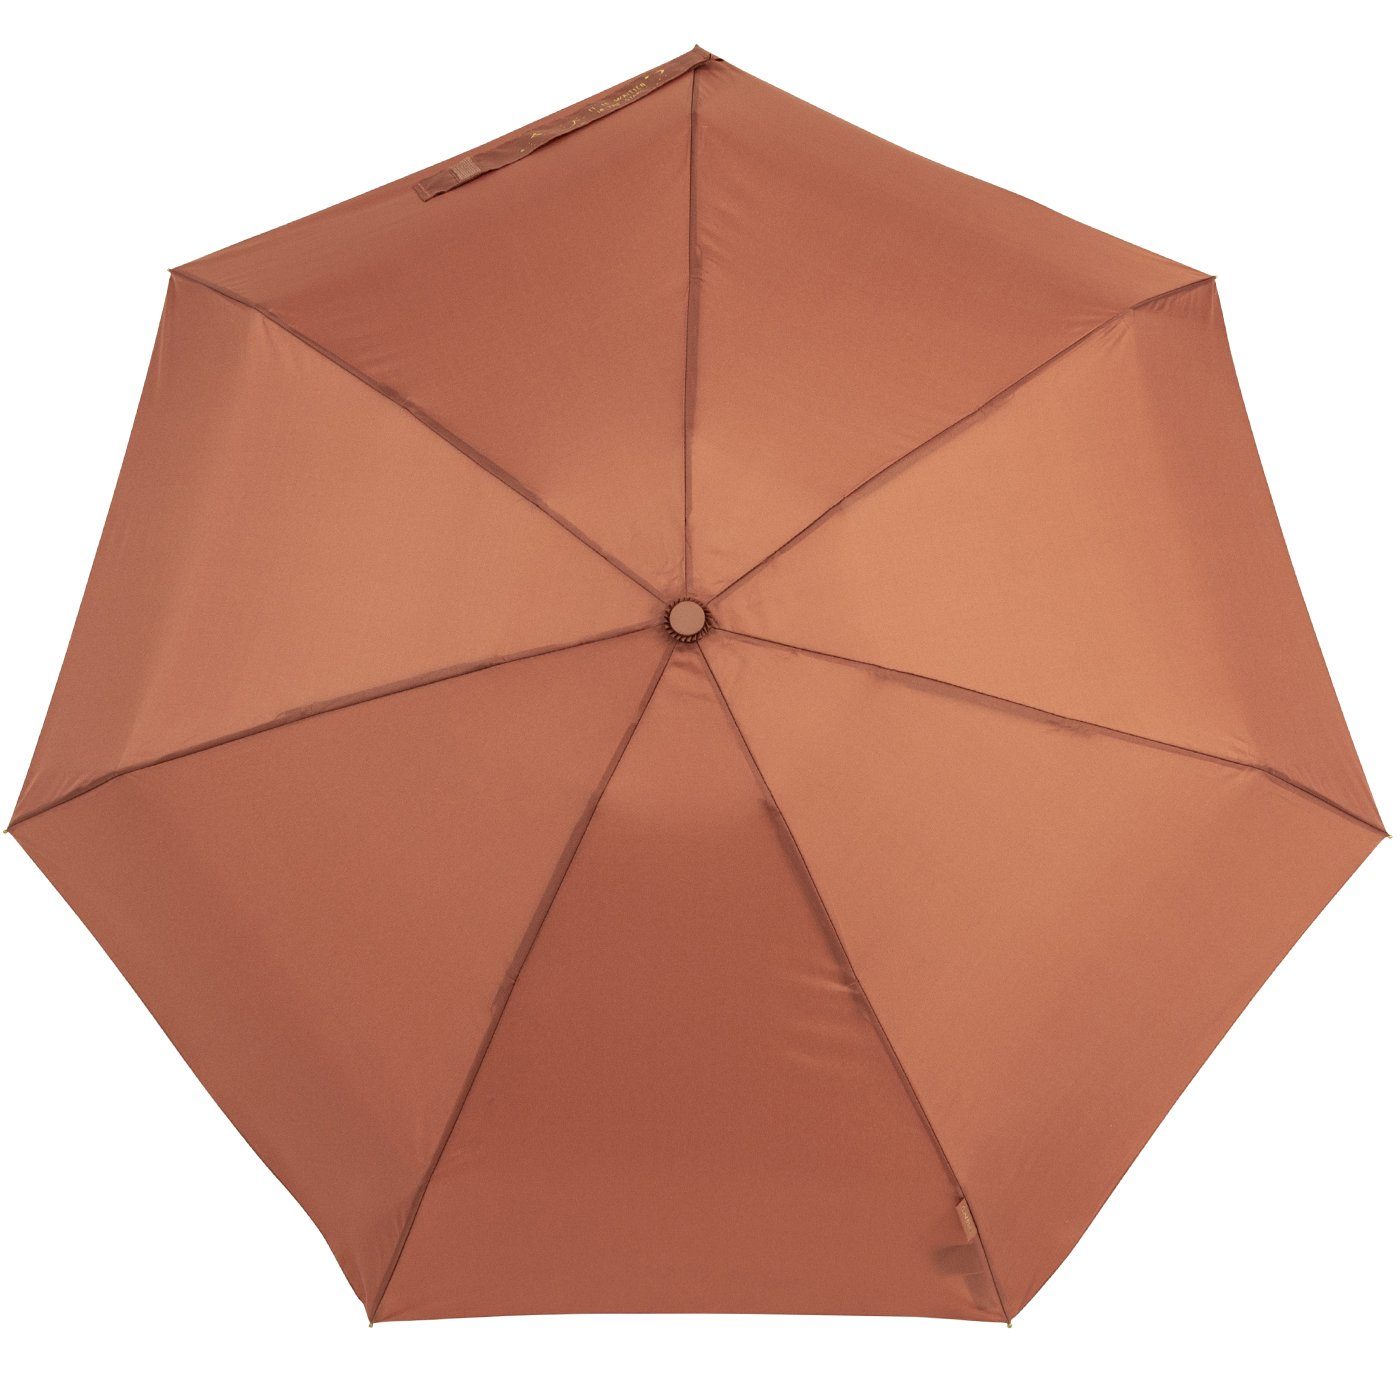 dem auf Aufdruck kompakt, und Taschenregenschirm braun, bisetti goldenem klein, stabil mit Damen-Regenschirm, Schließband